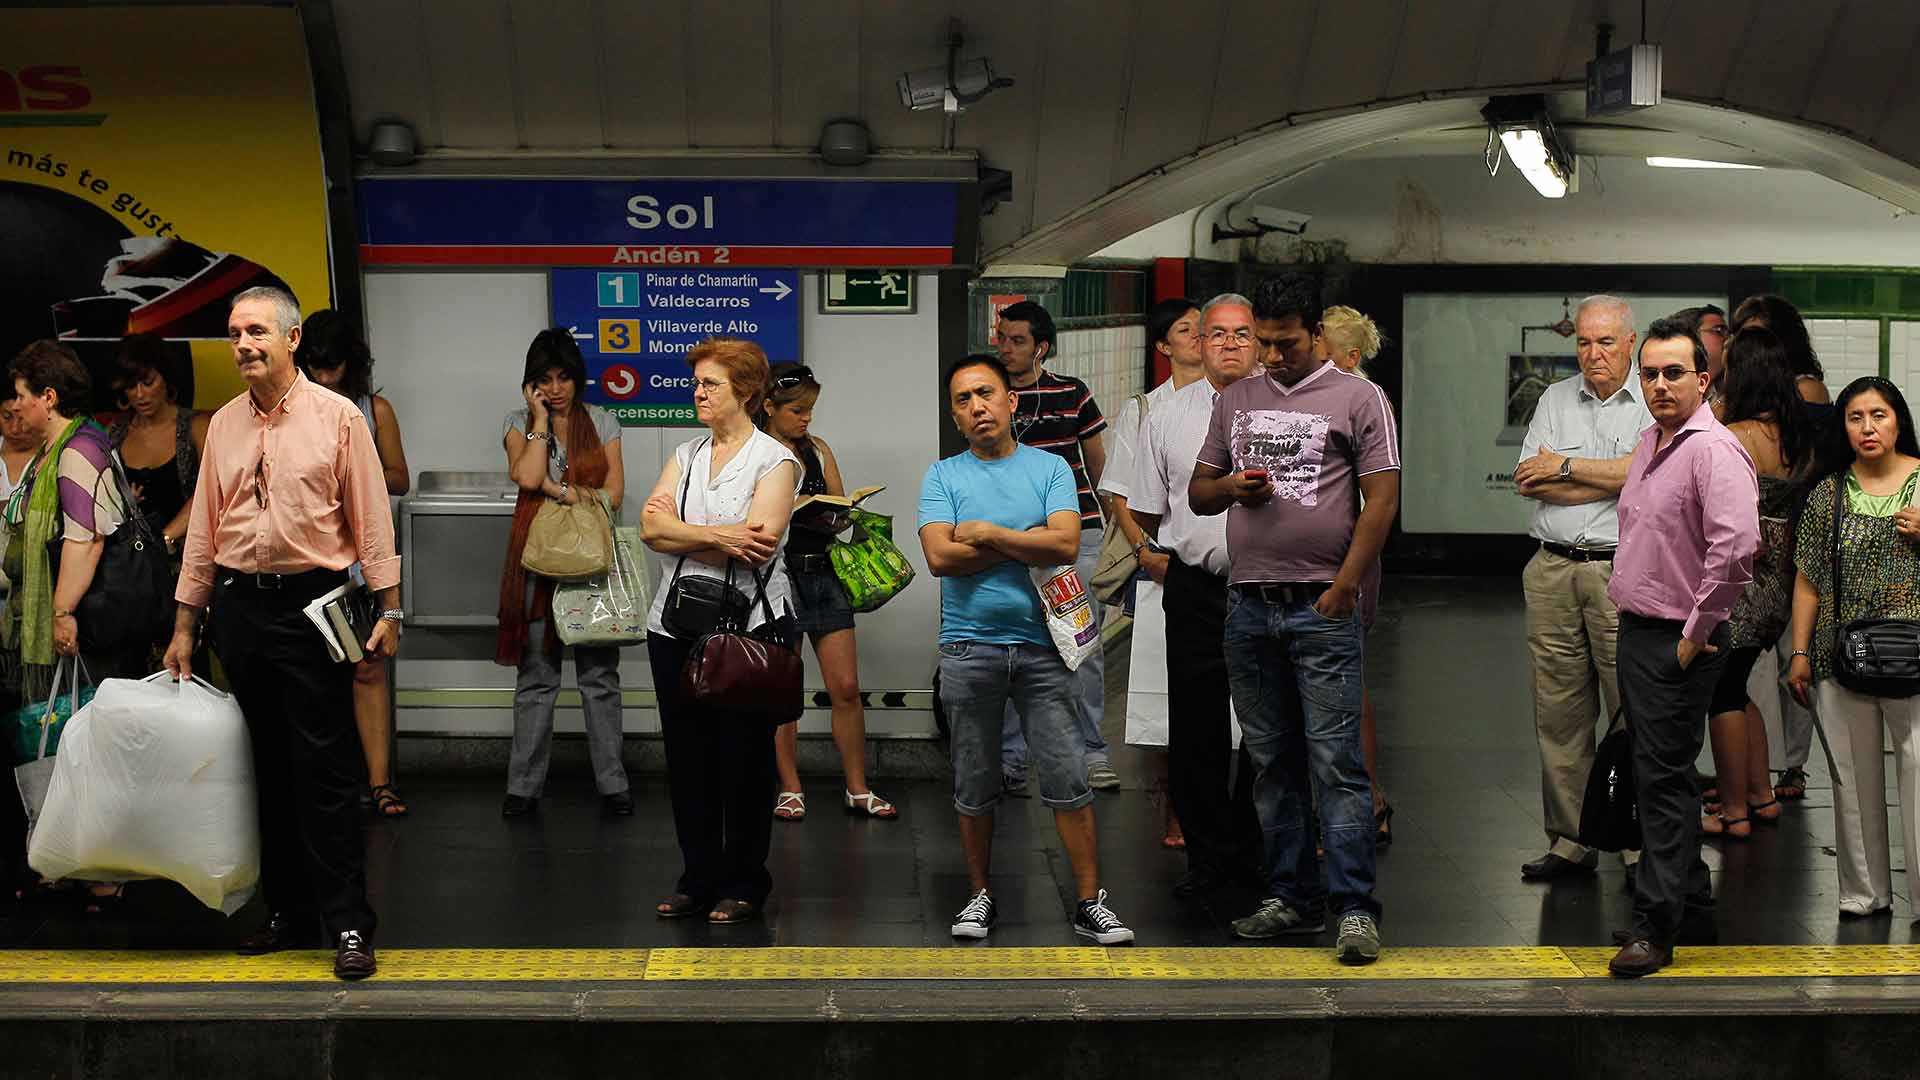 Los trenes de Metro de Madrid quedarán libres de amianto a finales de 2019